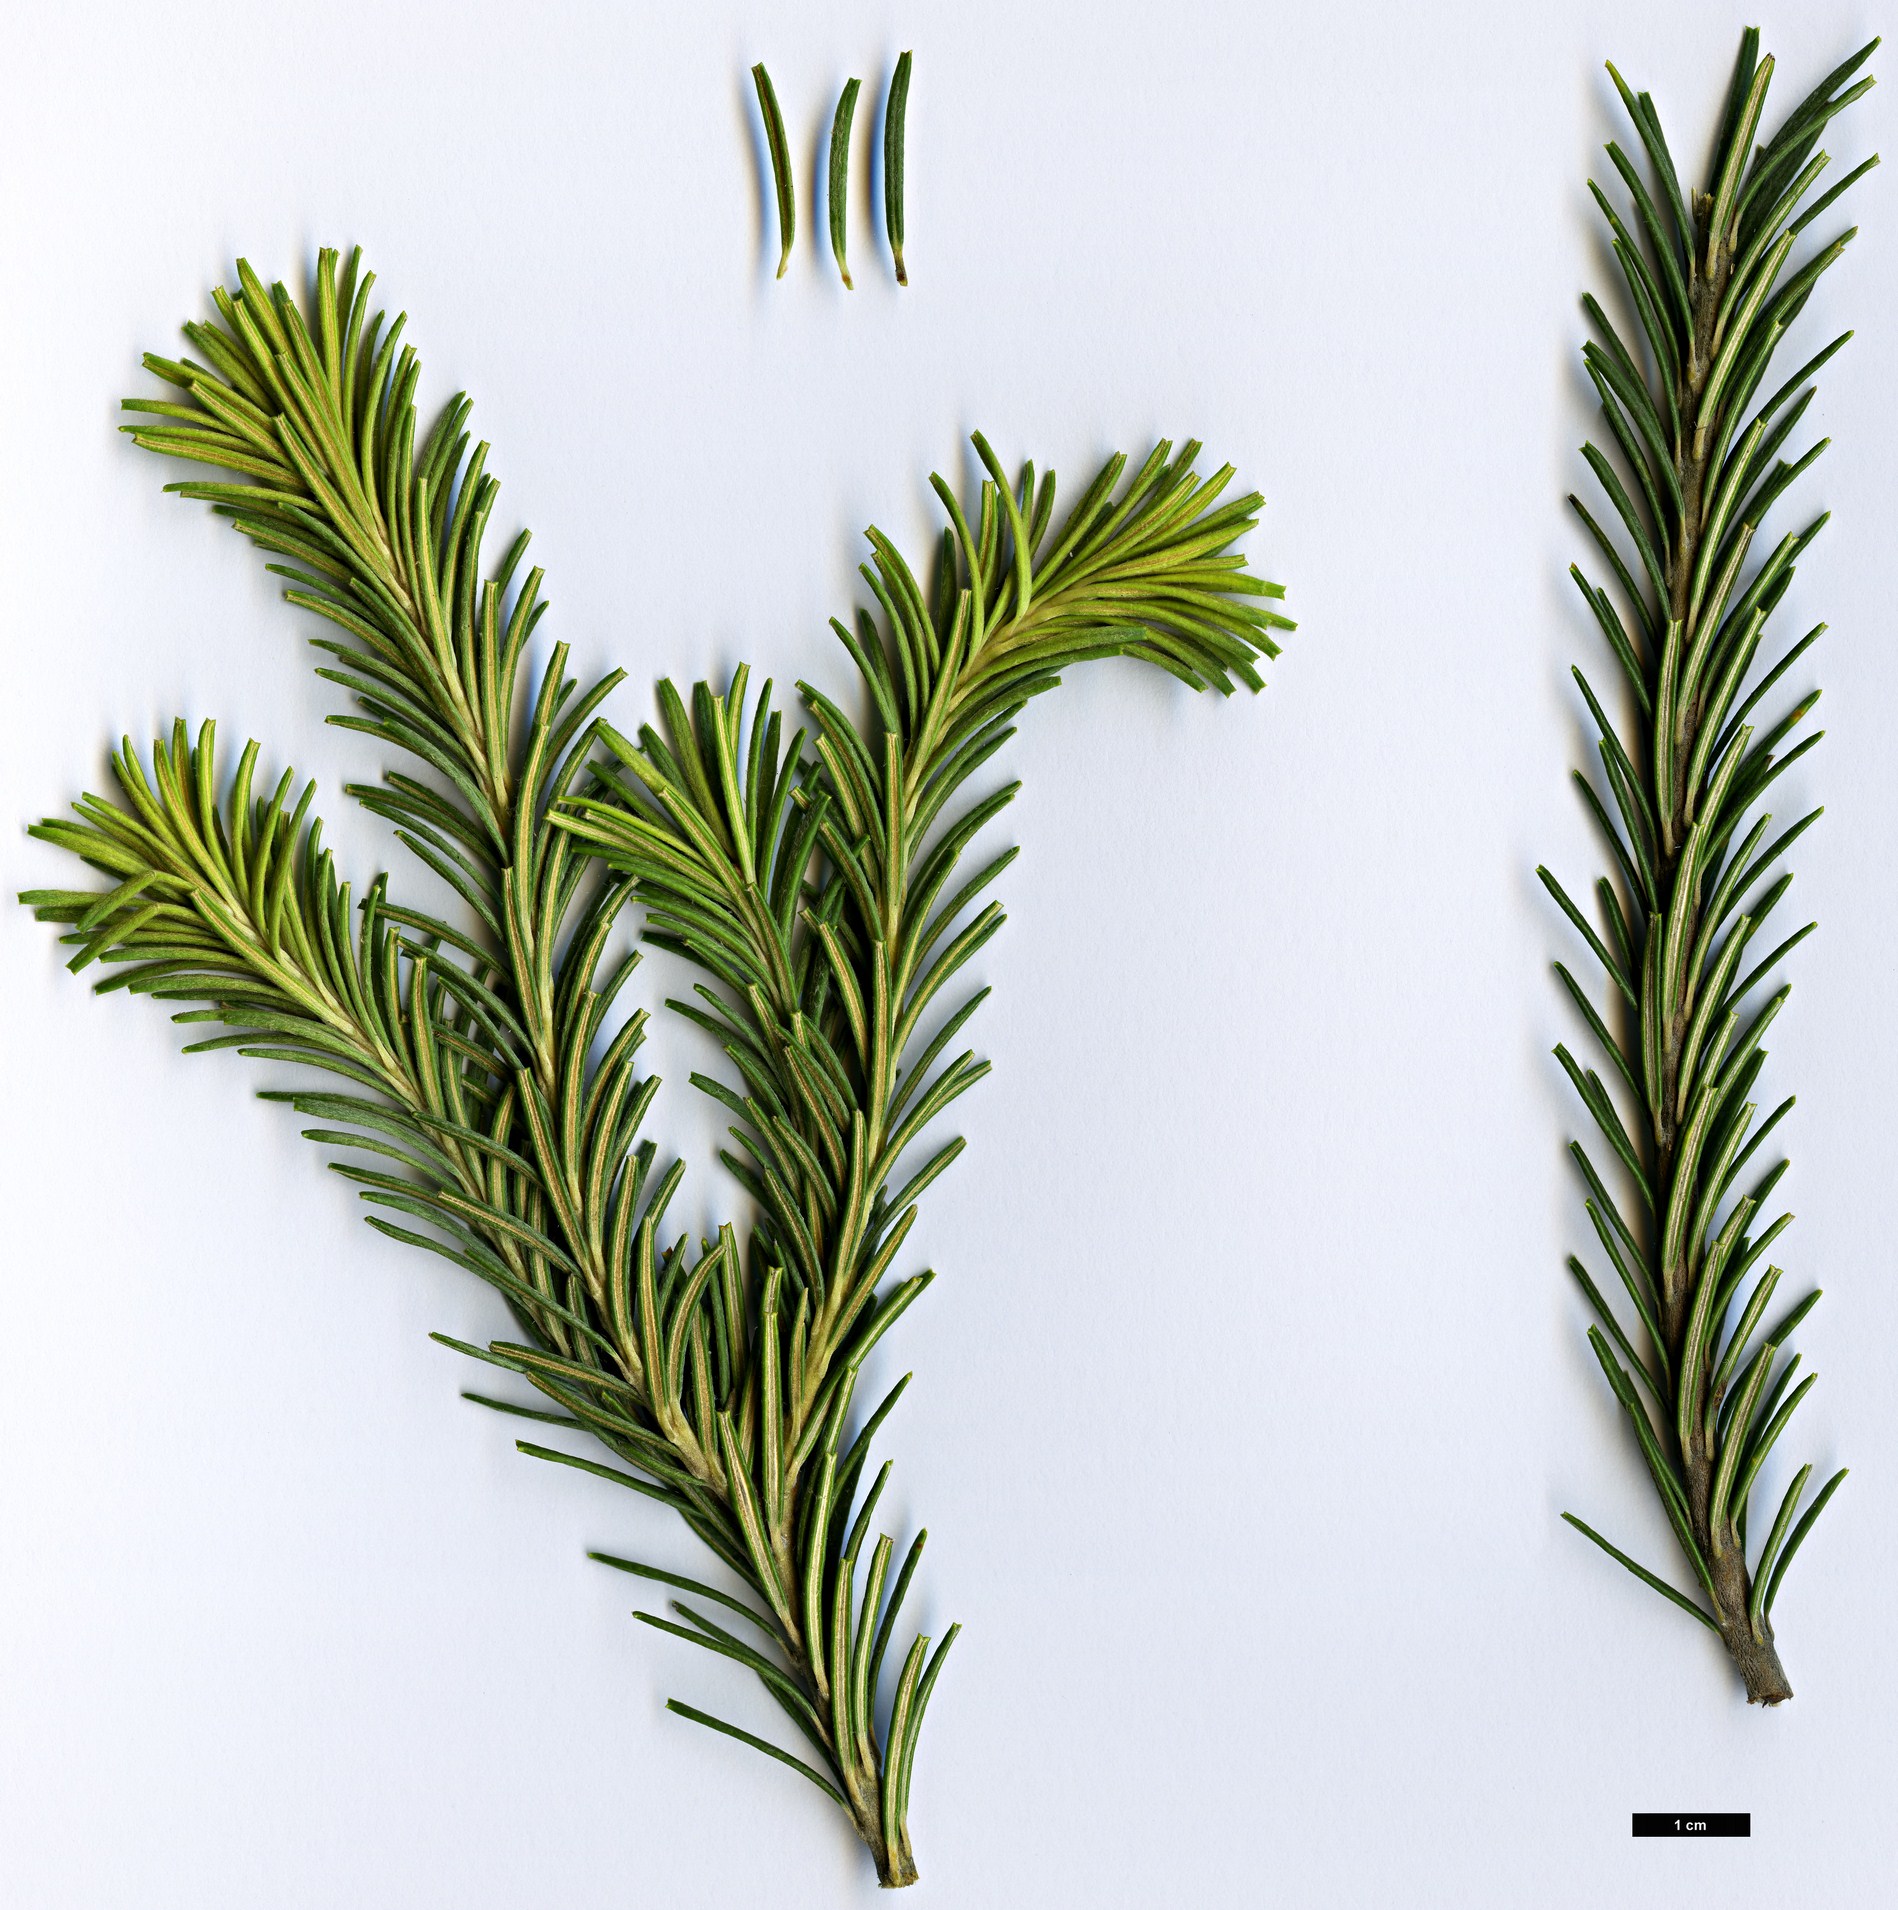 High resolution image: Family: Proteaceae - Genus: Banksia - Taxon: ericifolia - SpeciesSub: subsp. ericifolia